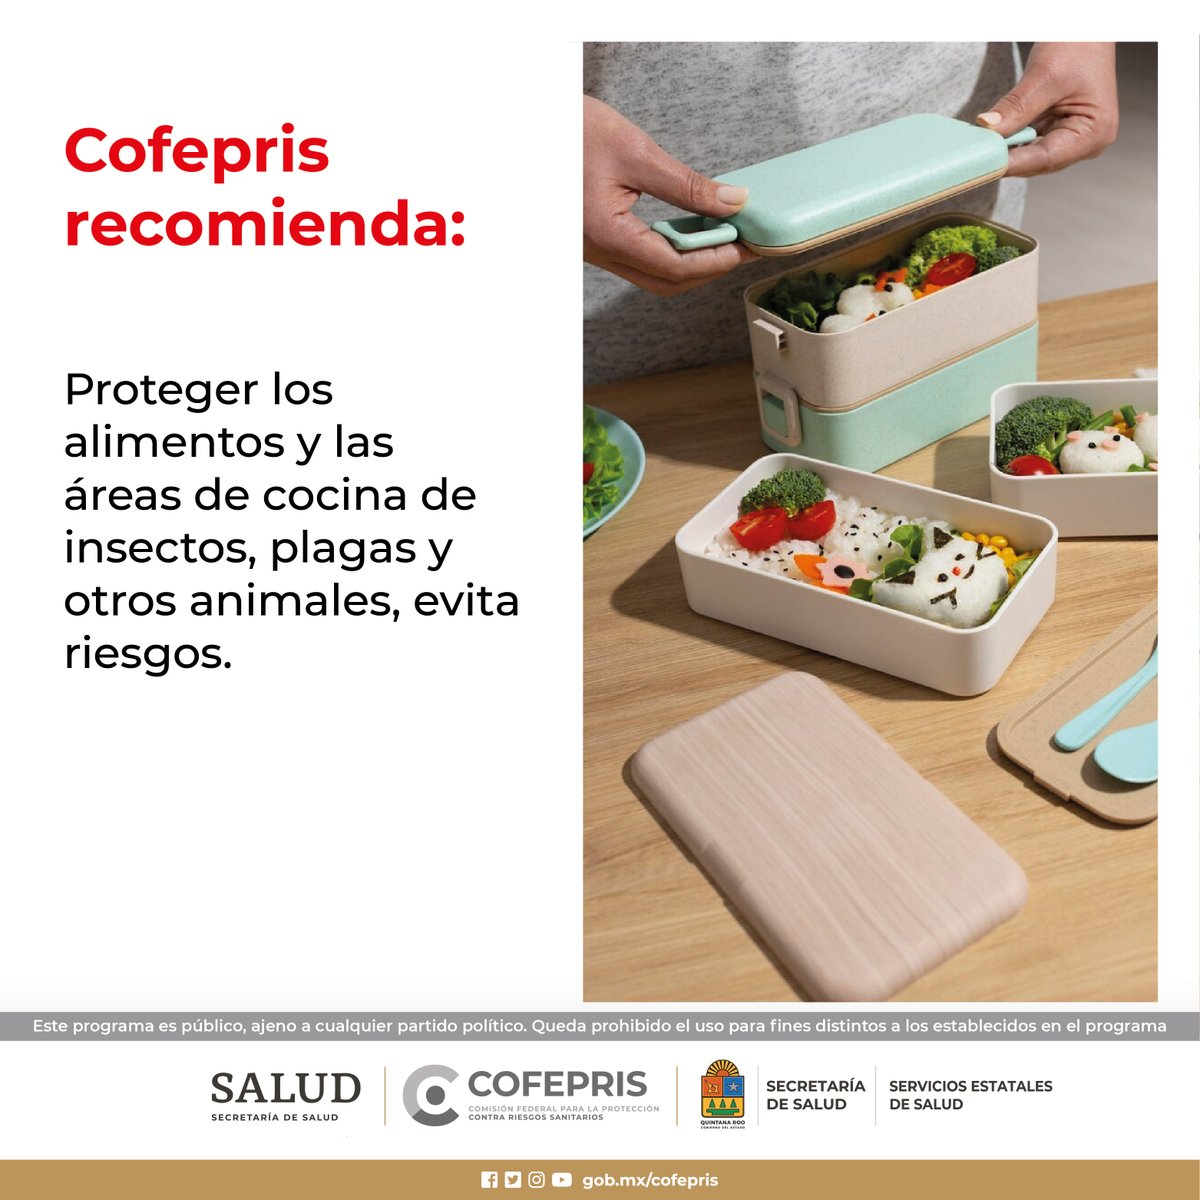 Proteger los alimentos y las áreas de cocina de insectos.
@COFEPRIS 
#CofeprisTeProtege
#cofepriságil
#CofeprisJusta
#CofeprisTransparente
#Emergencias
#DprisQroo